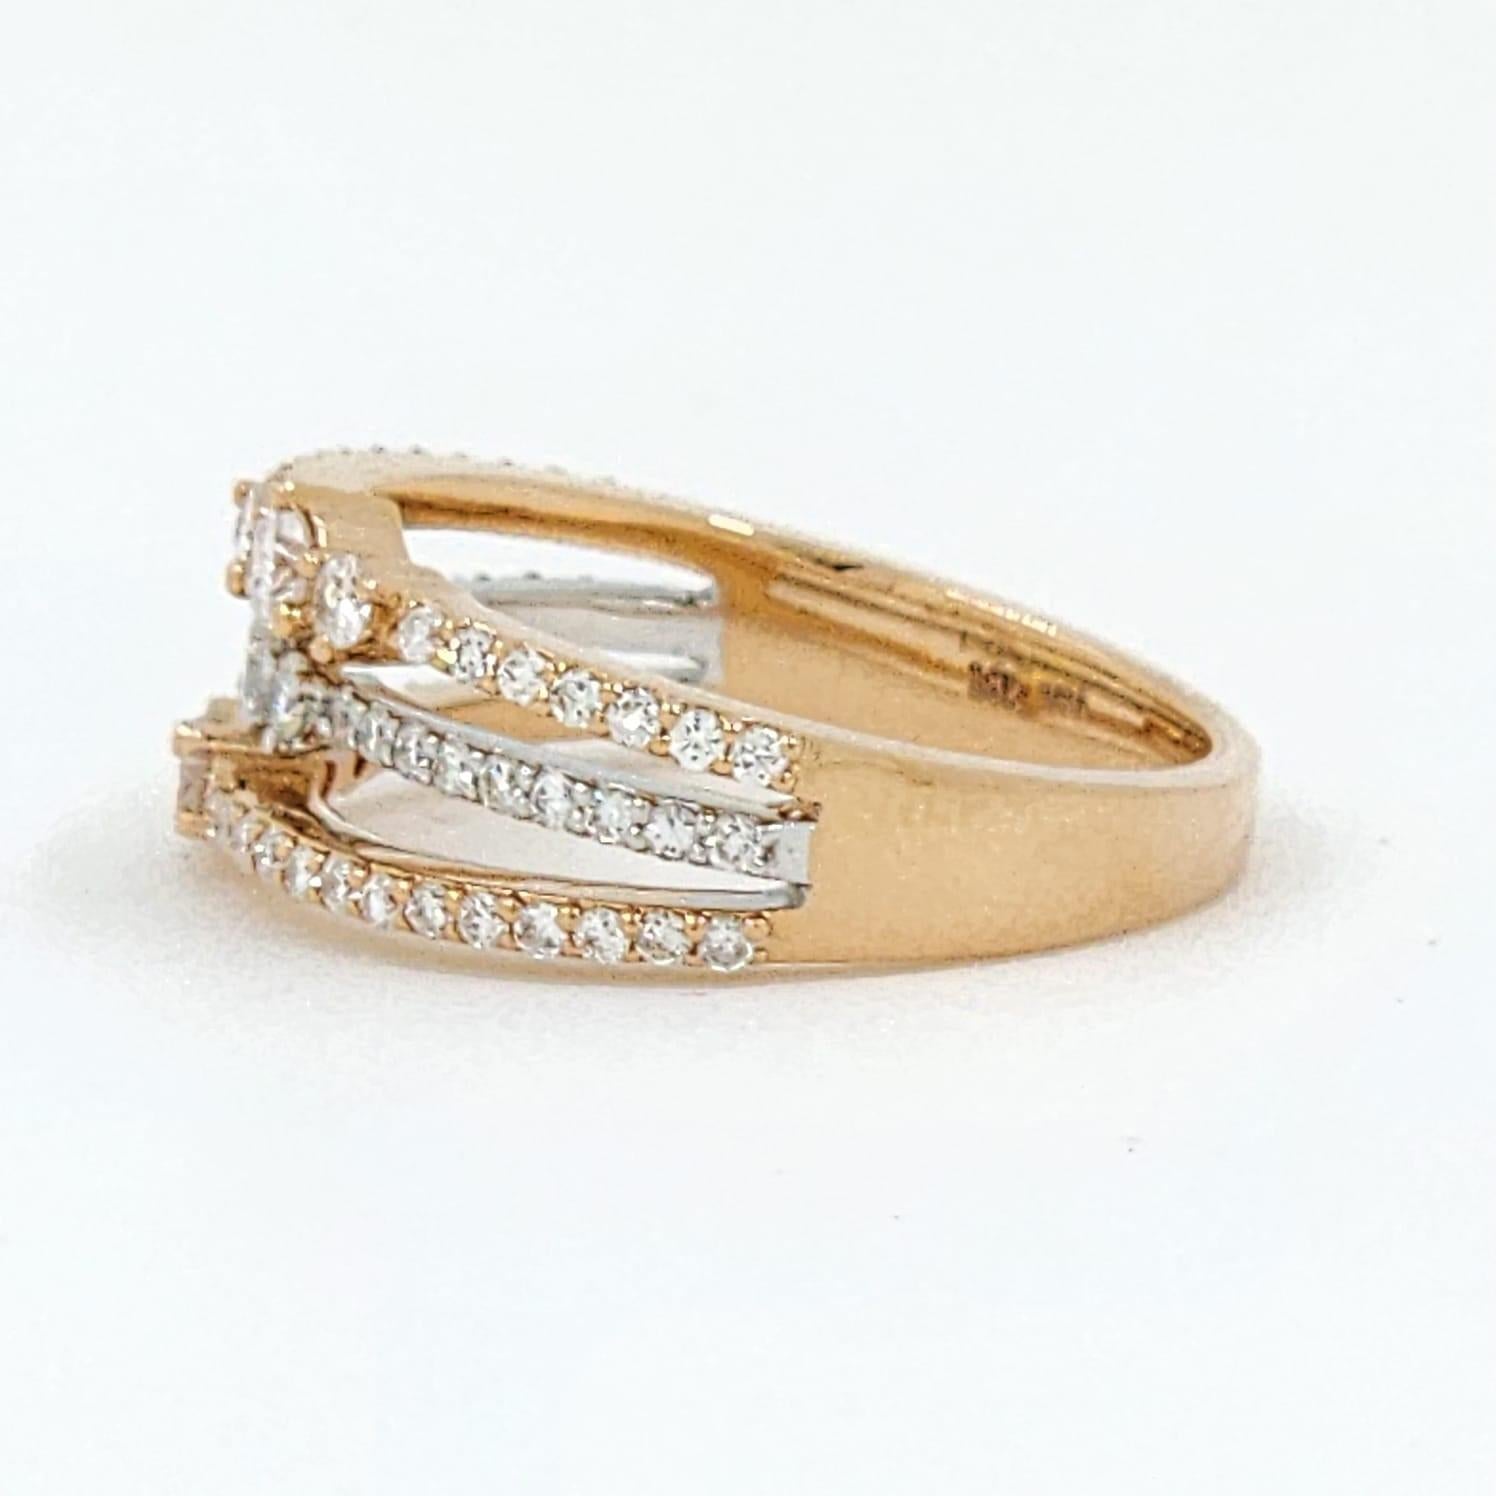 Round Cut 0.66 Carat Diamond Band Ring in 18 Karat Rose and White Gold